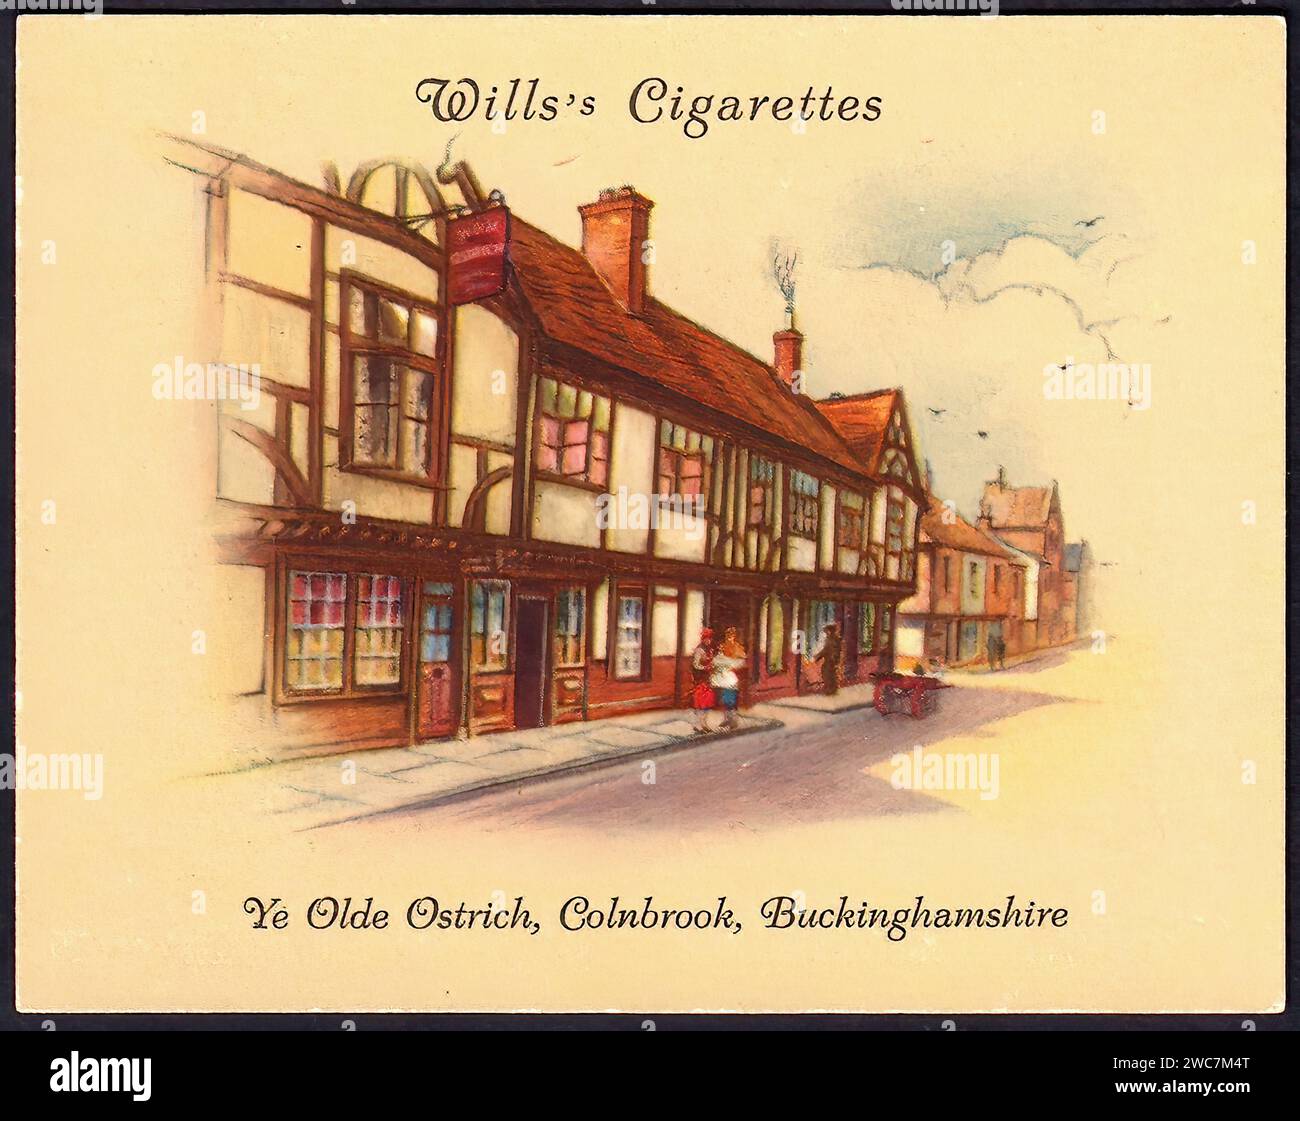 Ye Olde Ostrich, Colnbrook - Vintage Cigarette Card Illustration Stock Photo